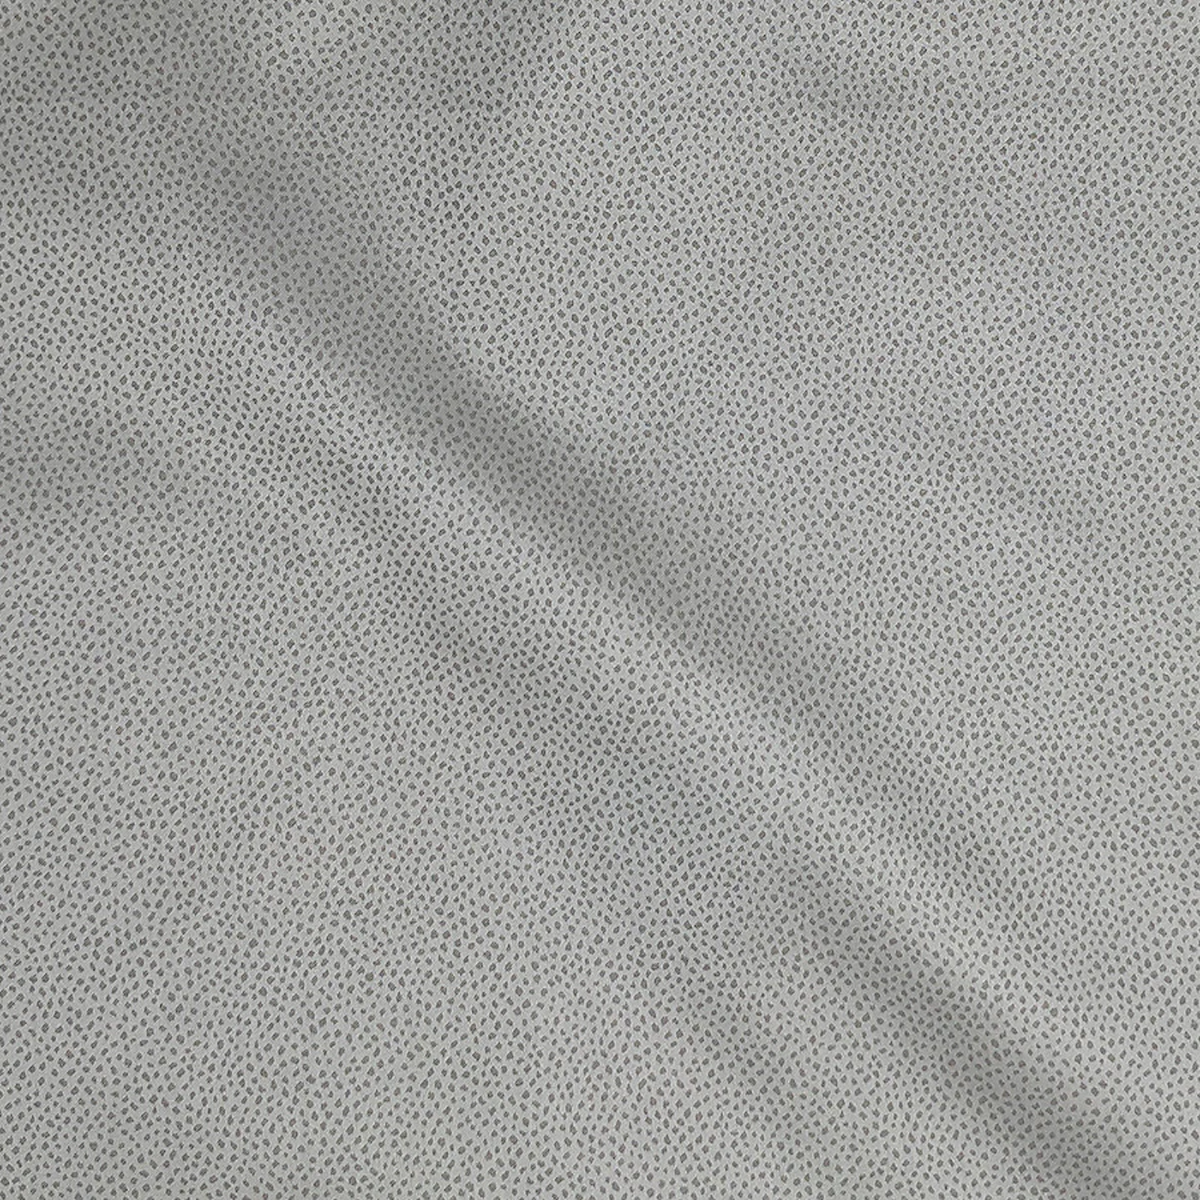 SDH Gobi Bedding Swatch Raisin Fine Linens